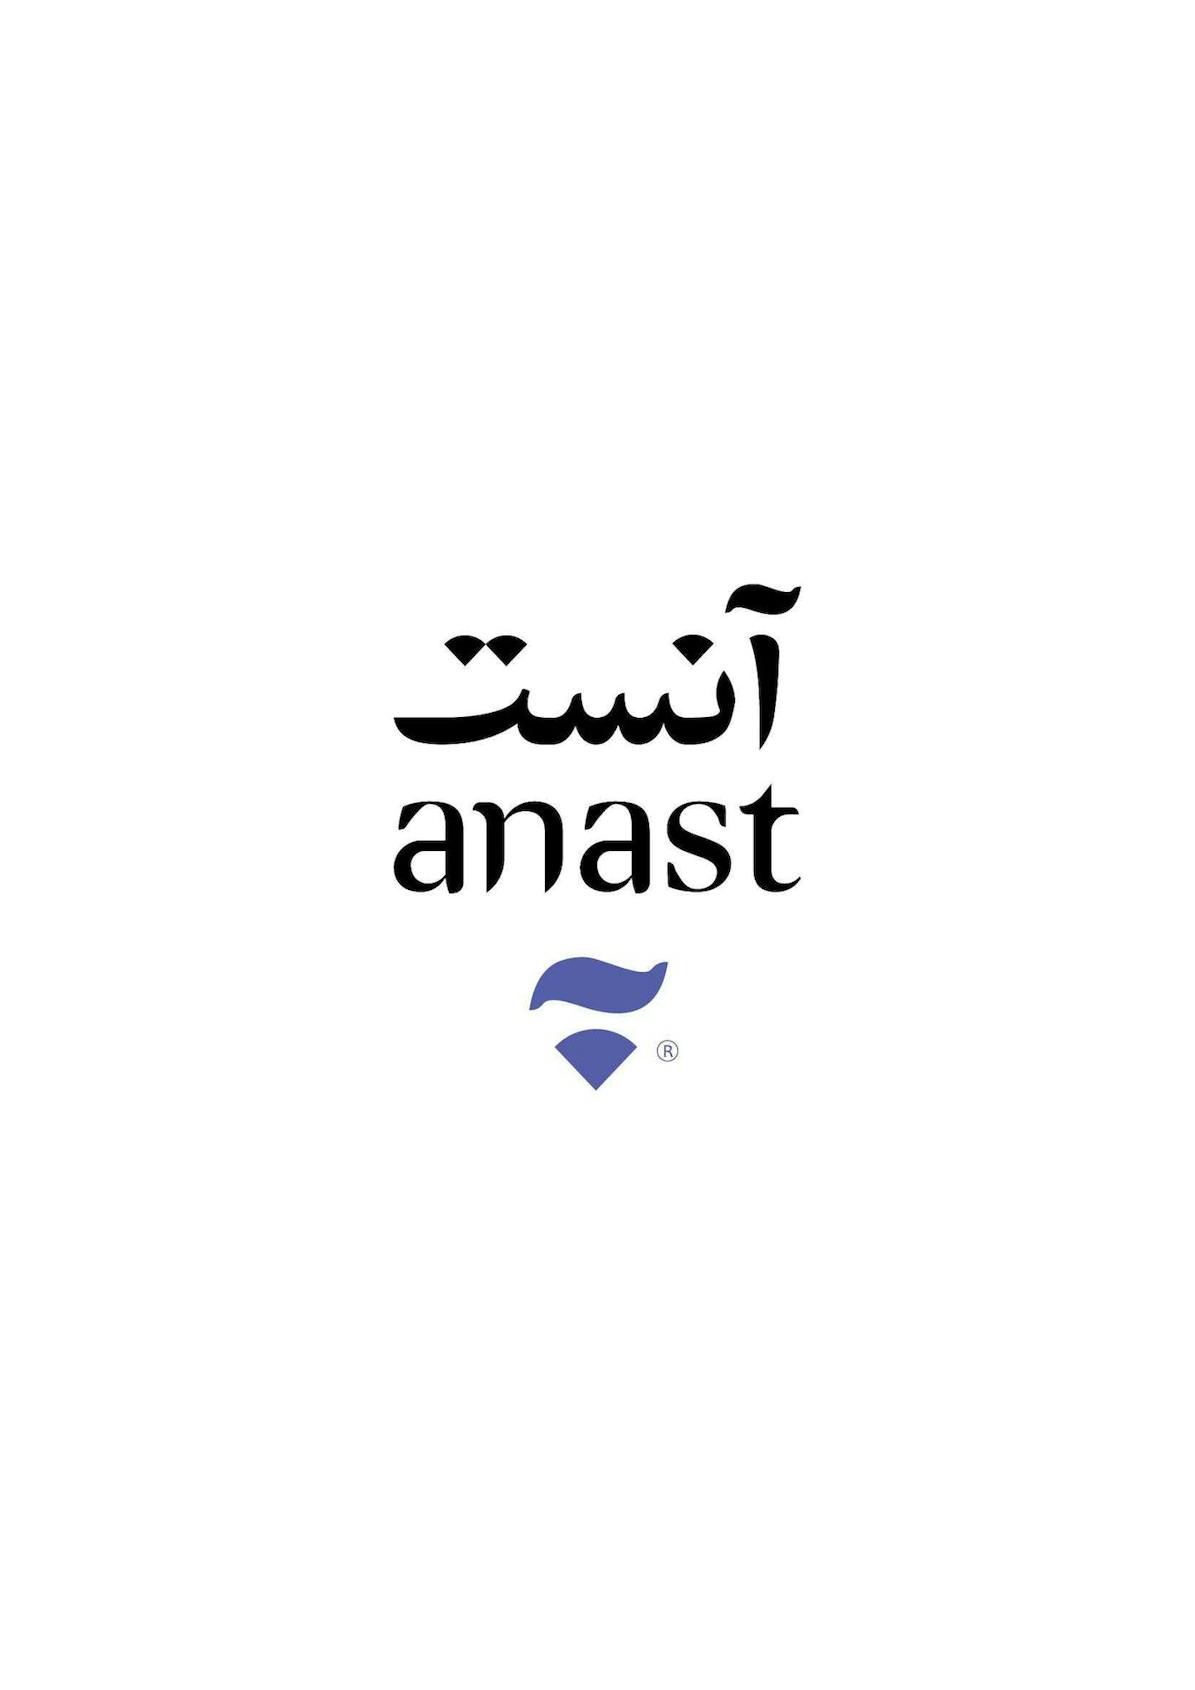 Anast